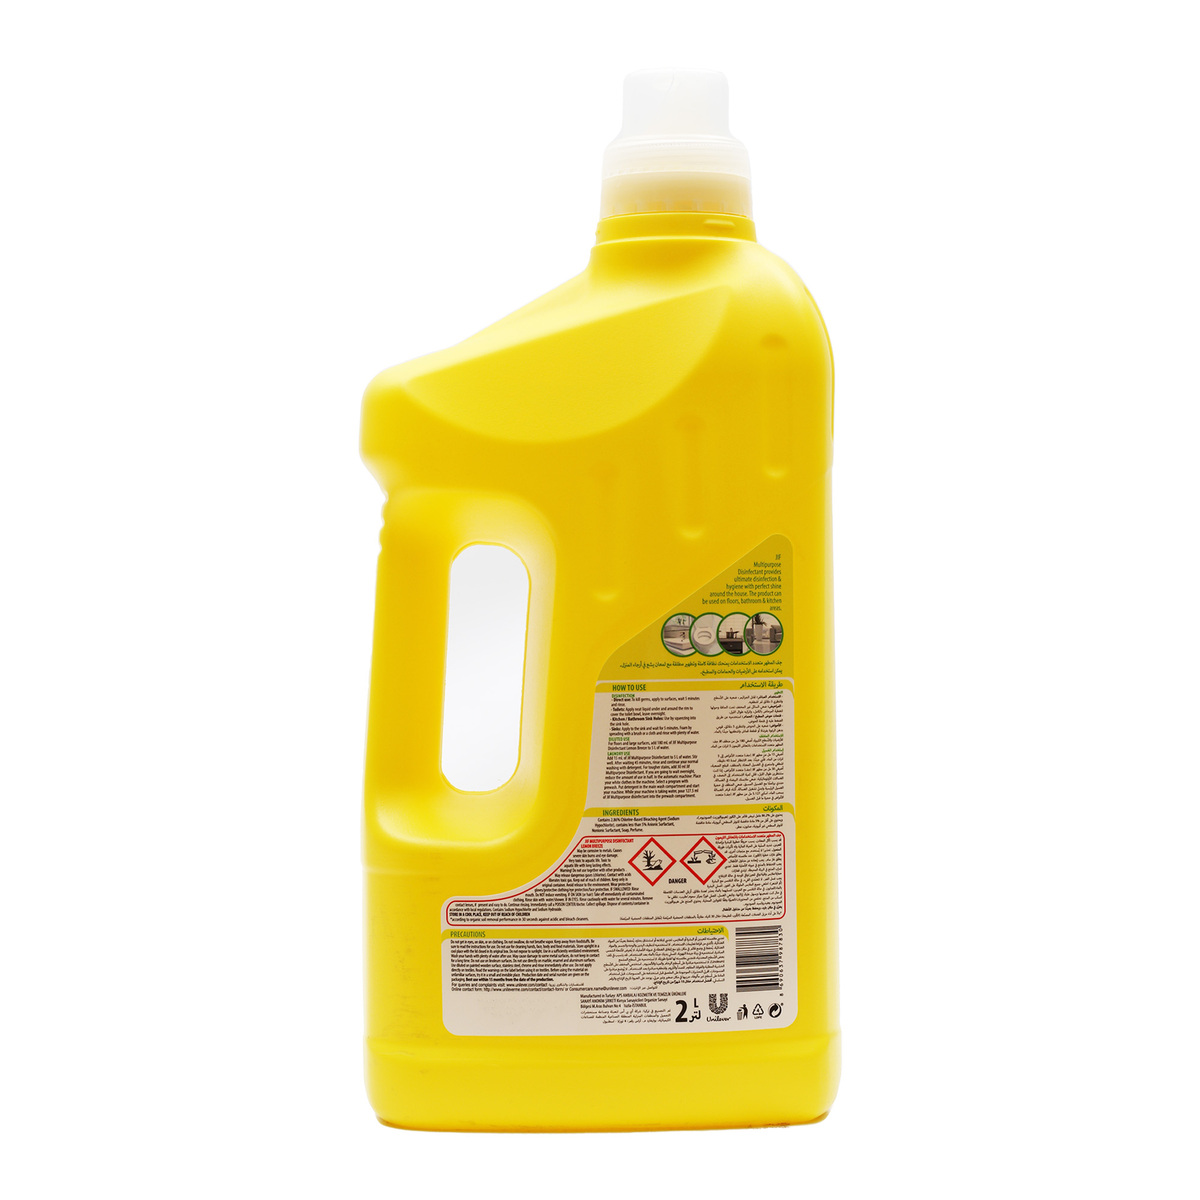 Jif Lemon Multi-Purpose Disinfectant 2Litre